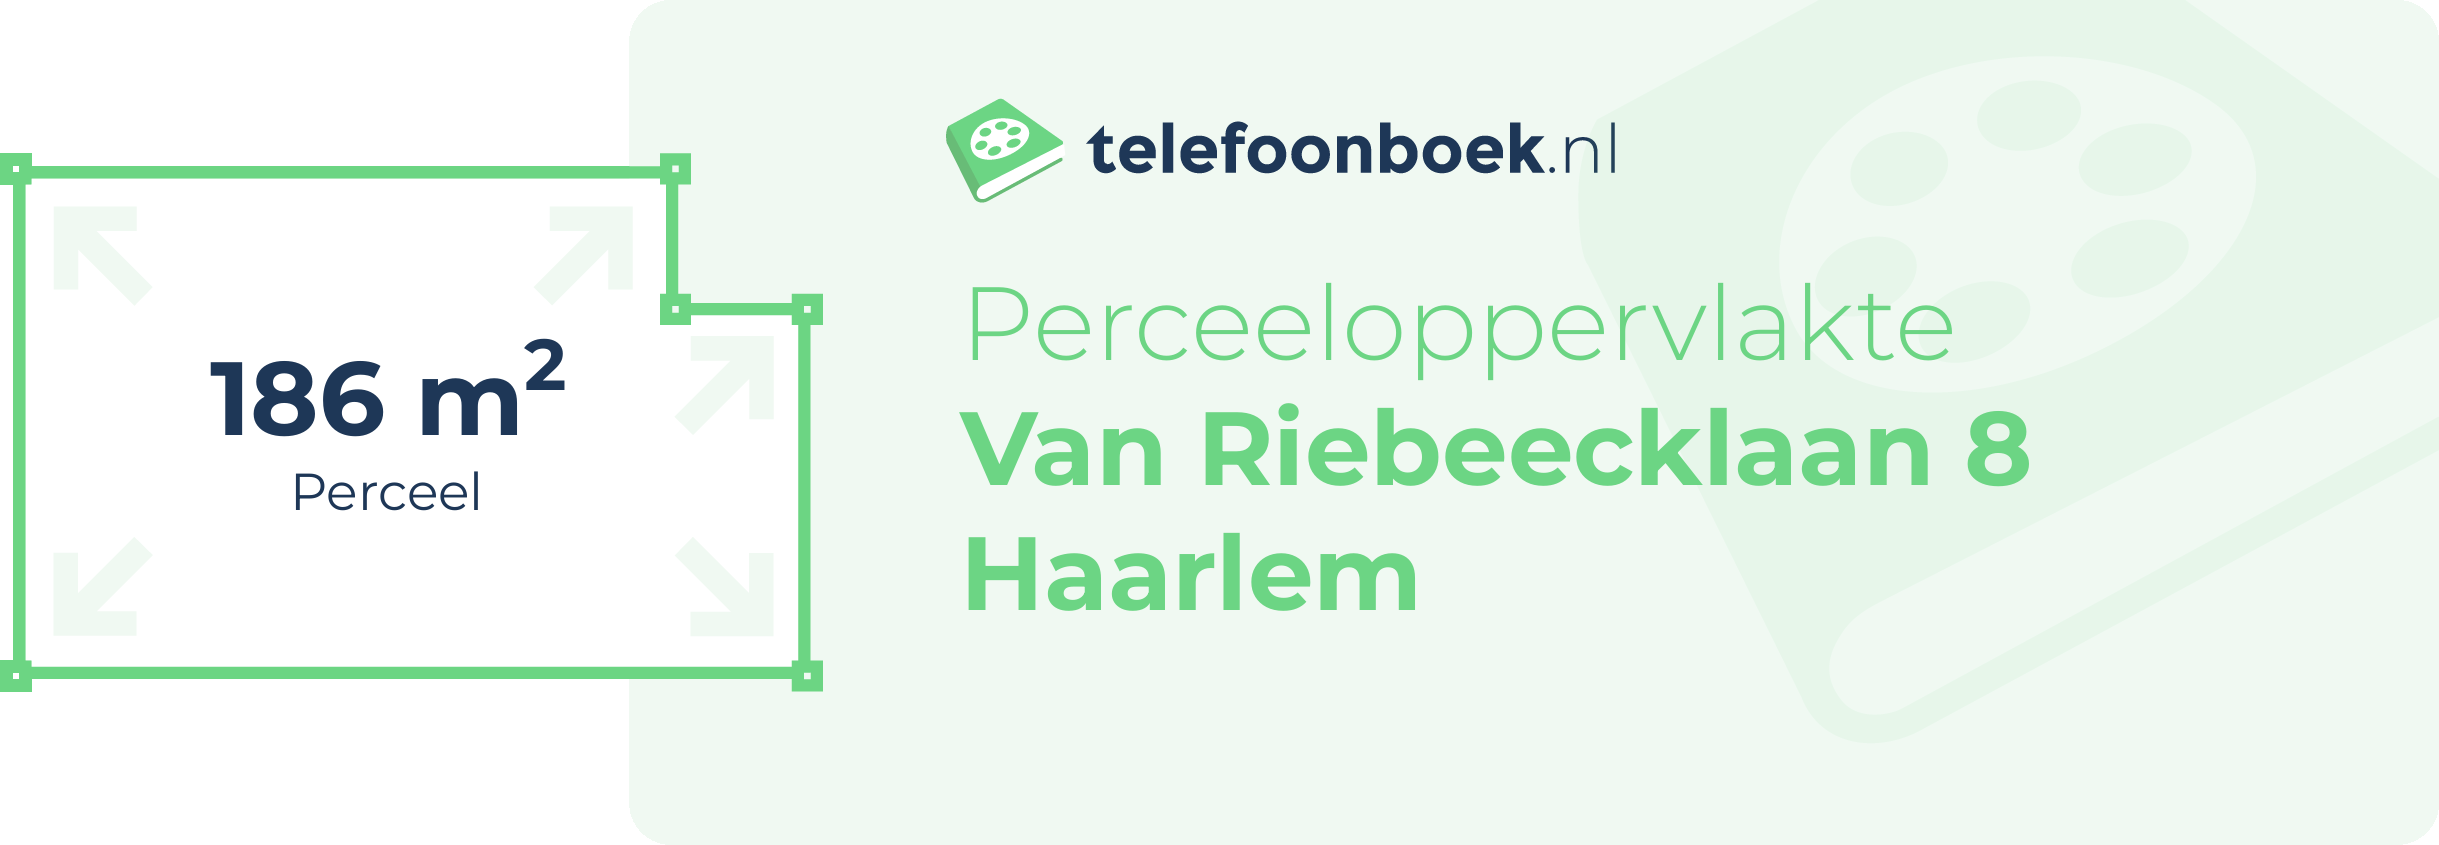 Perceeloppervlakte Van Riebeecklaan 8 Haarlem